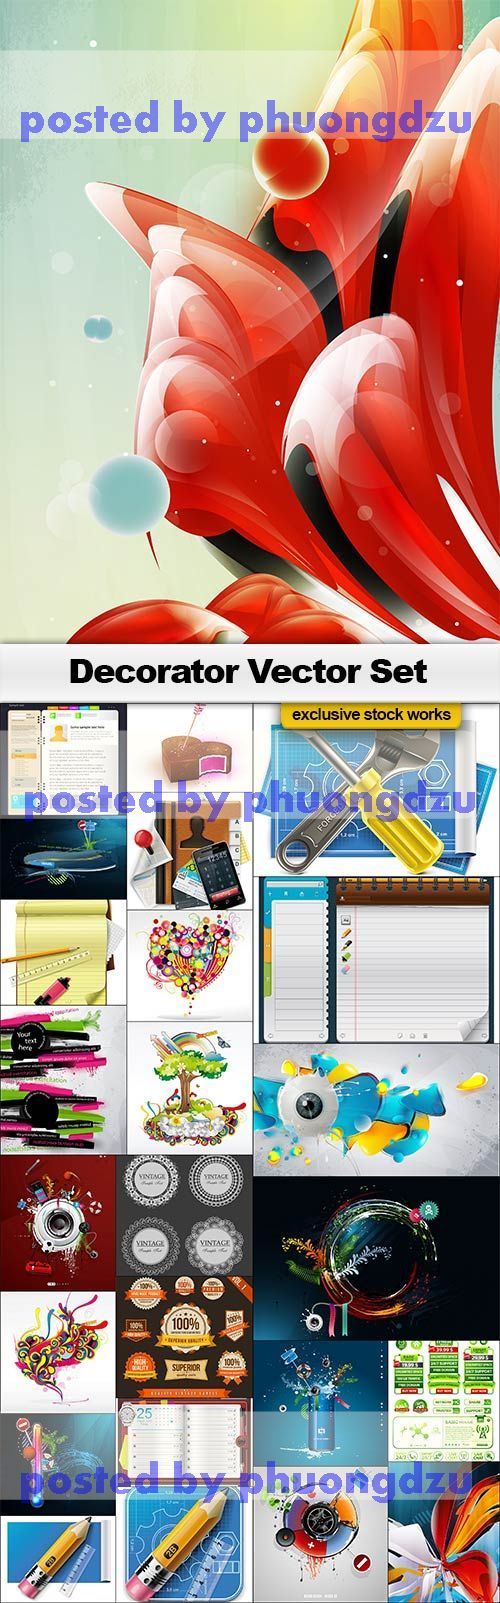 Decorators Vector Set 2